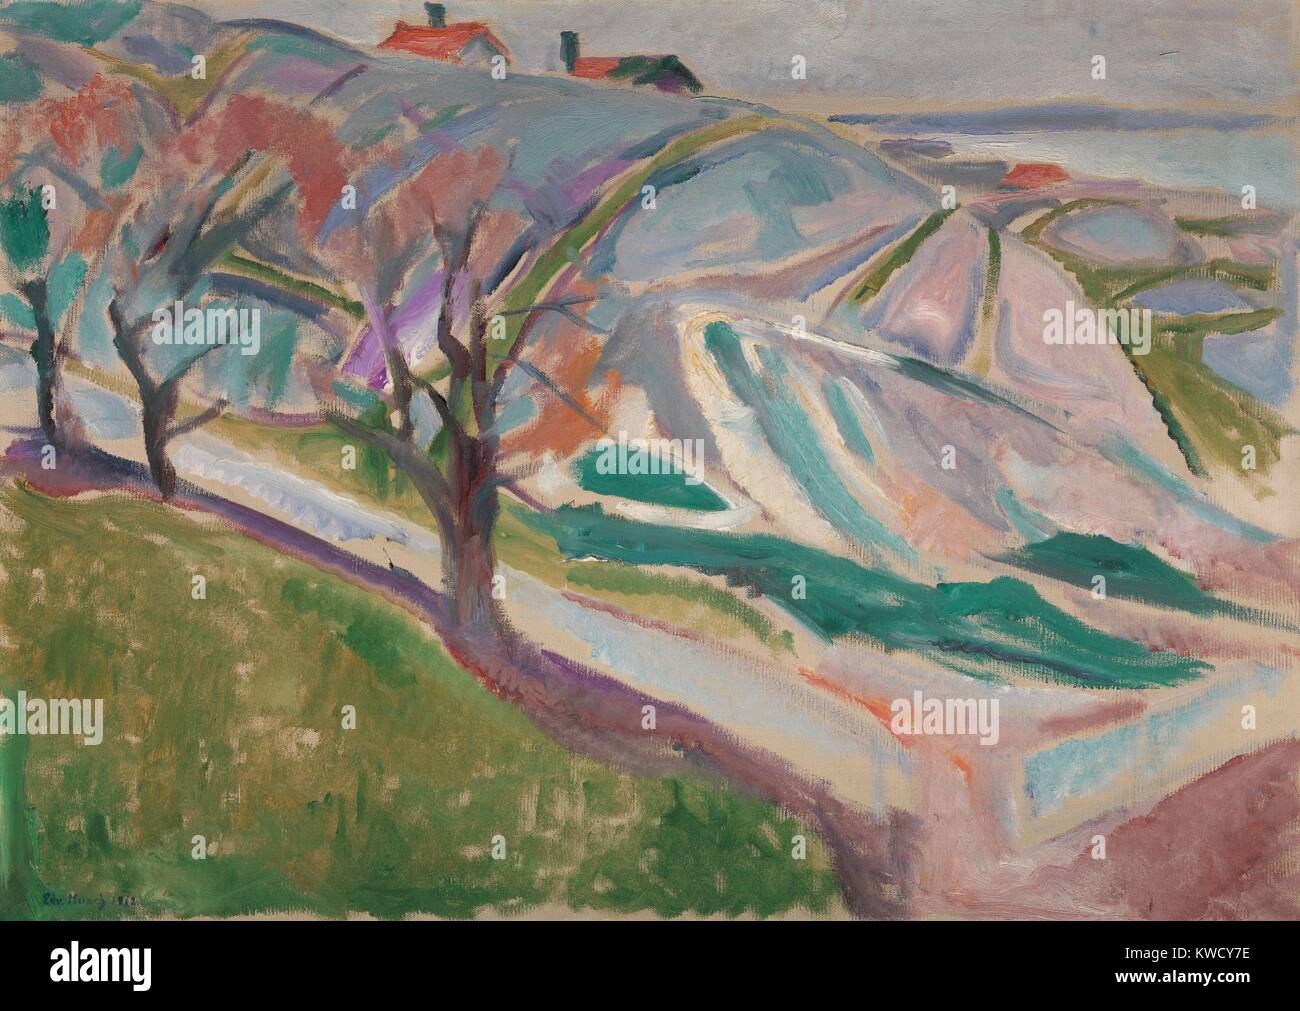 Paysage, Kragerom, d'Edvard Munch, 1912, symbolisme expressionniste norvégien/peinture, huile sur toile. Ce travail a été rendue quatre ans après rupture mentale grave Munchs, après quoi, il a peint dans un nouveau style de traits, une plus harmoniou BSLOC  2017 (5 139) Banque D'Images